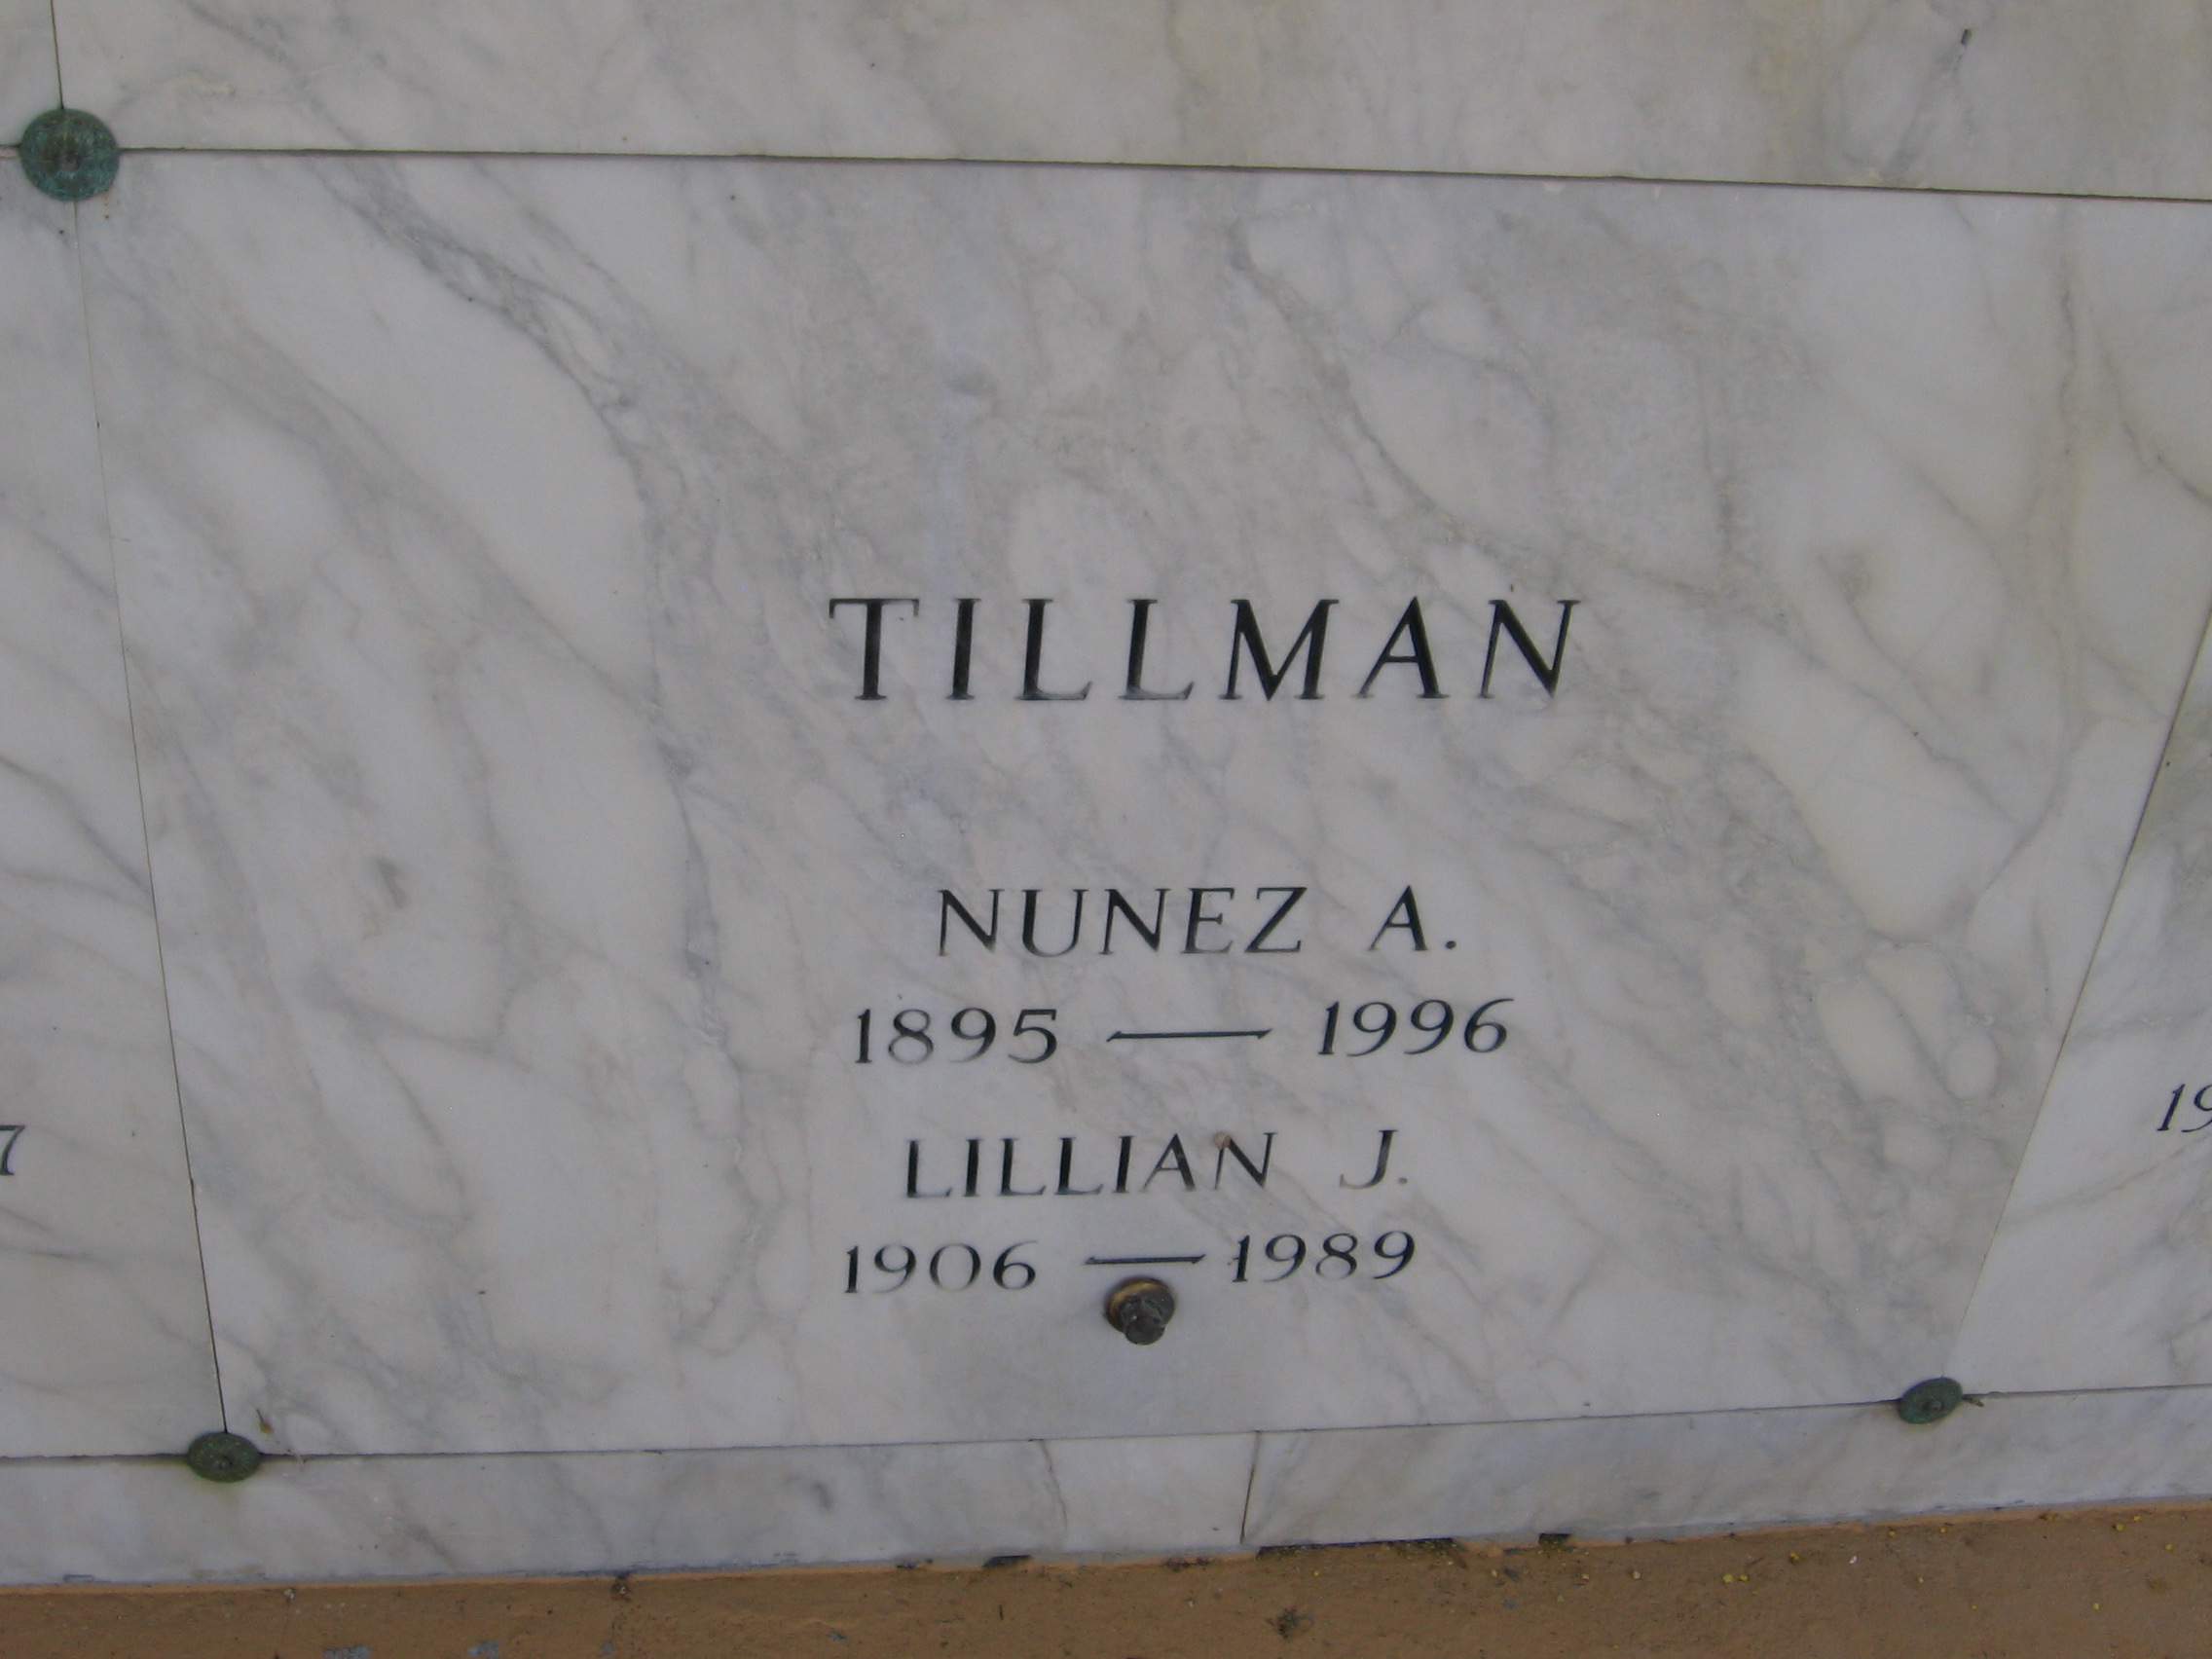 Lillian J Tillman